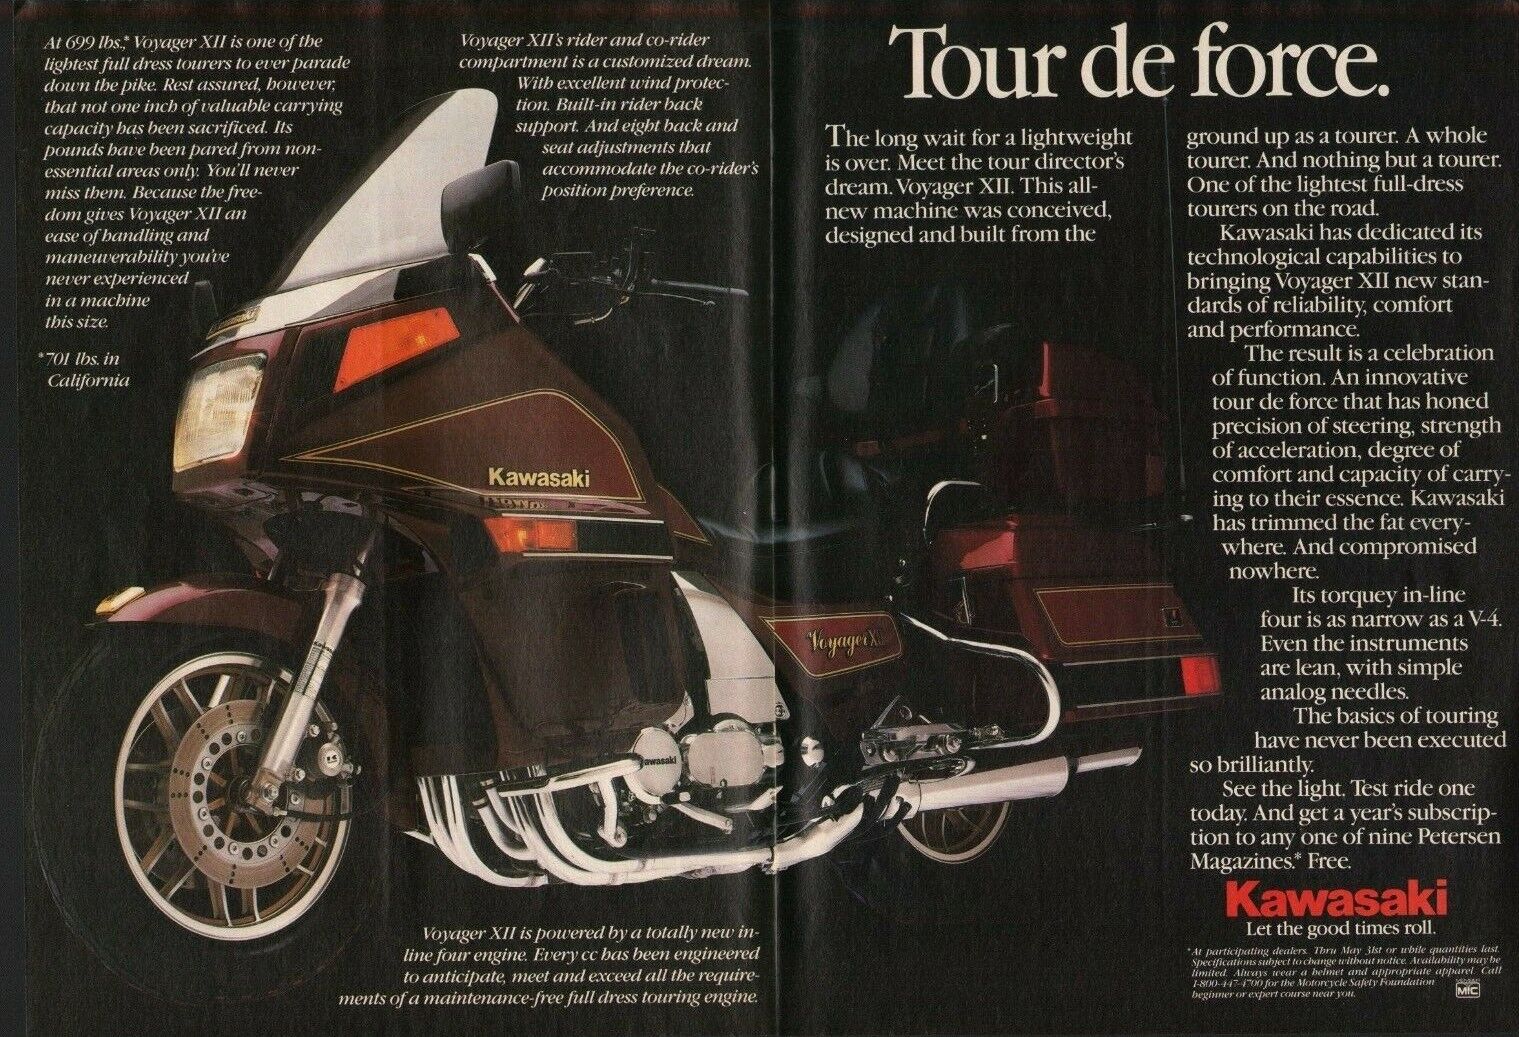 1986 Kawasaki Voyager XII - 2-Page Vintage Motorcycle Ad